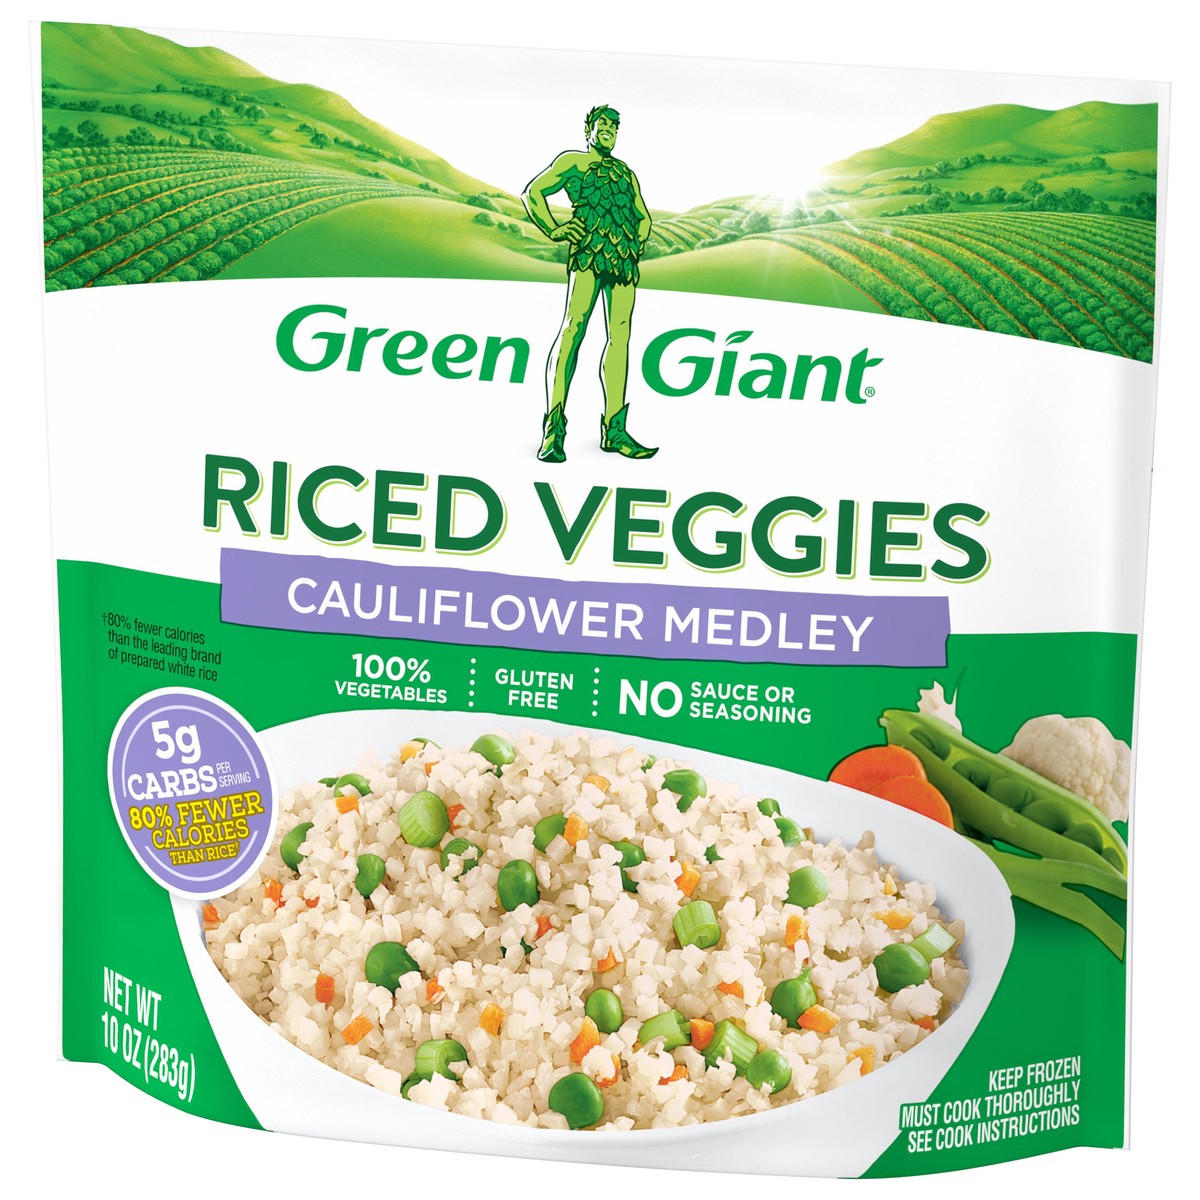 slide 3 of 8, Green Giant Riced Veggies Cauliflower Medley, Frozen Vegetables, 10 OZ, 10 oz